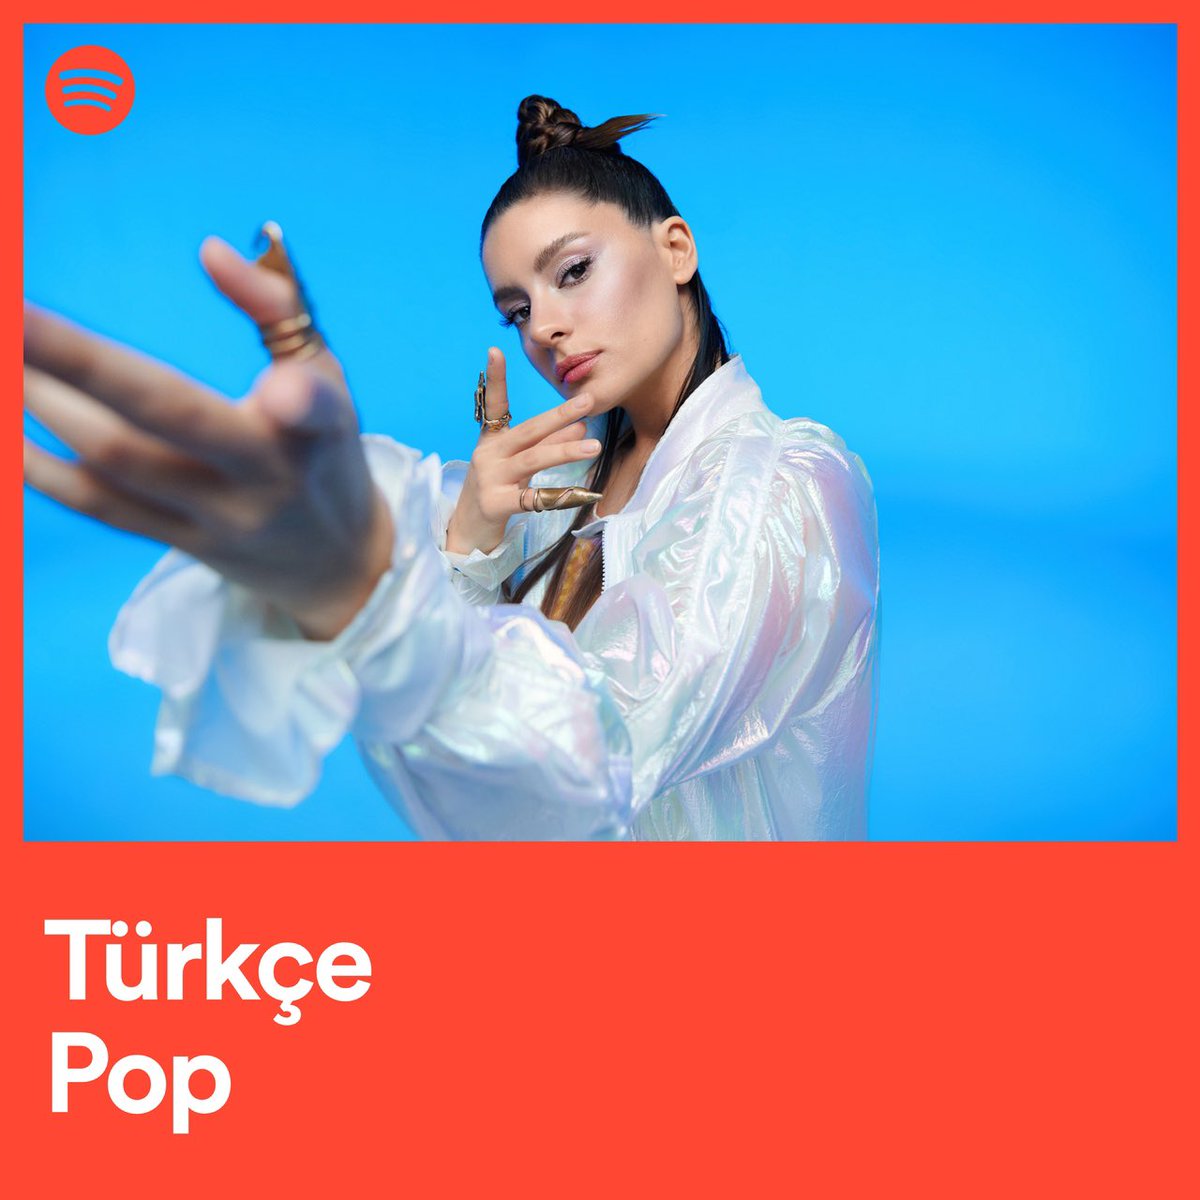 Kendime Not: R&B izleri taşırken Batı ve Doğu ezgilerini birleştiren yeni Atiye şarkısını Türkçe Pop listesinde dinlemeyi unutma. ✅ spoti.fi/3UQ0rh2